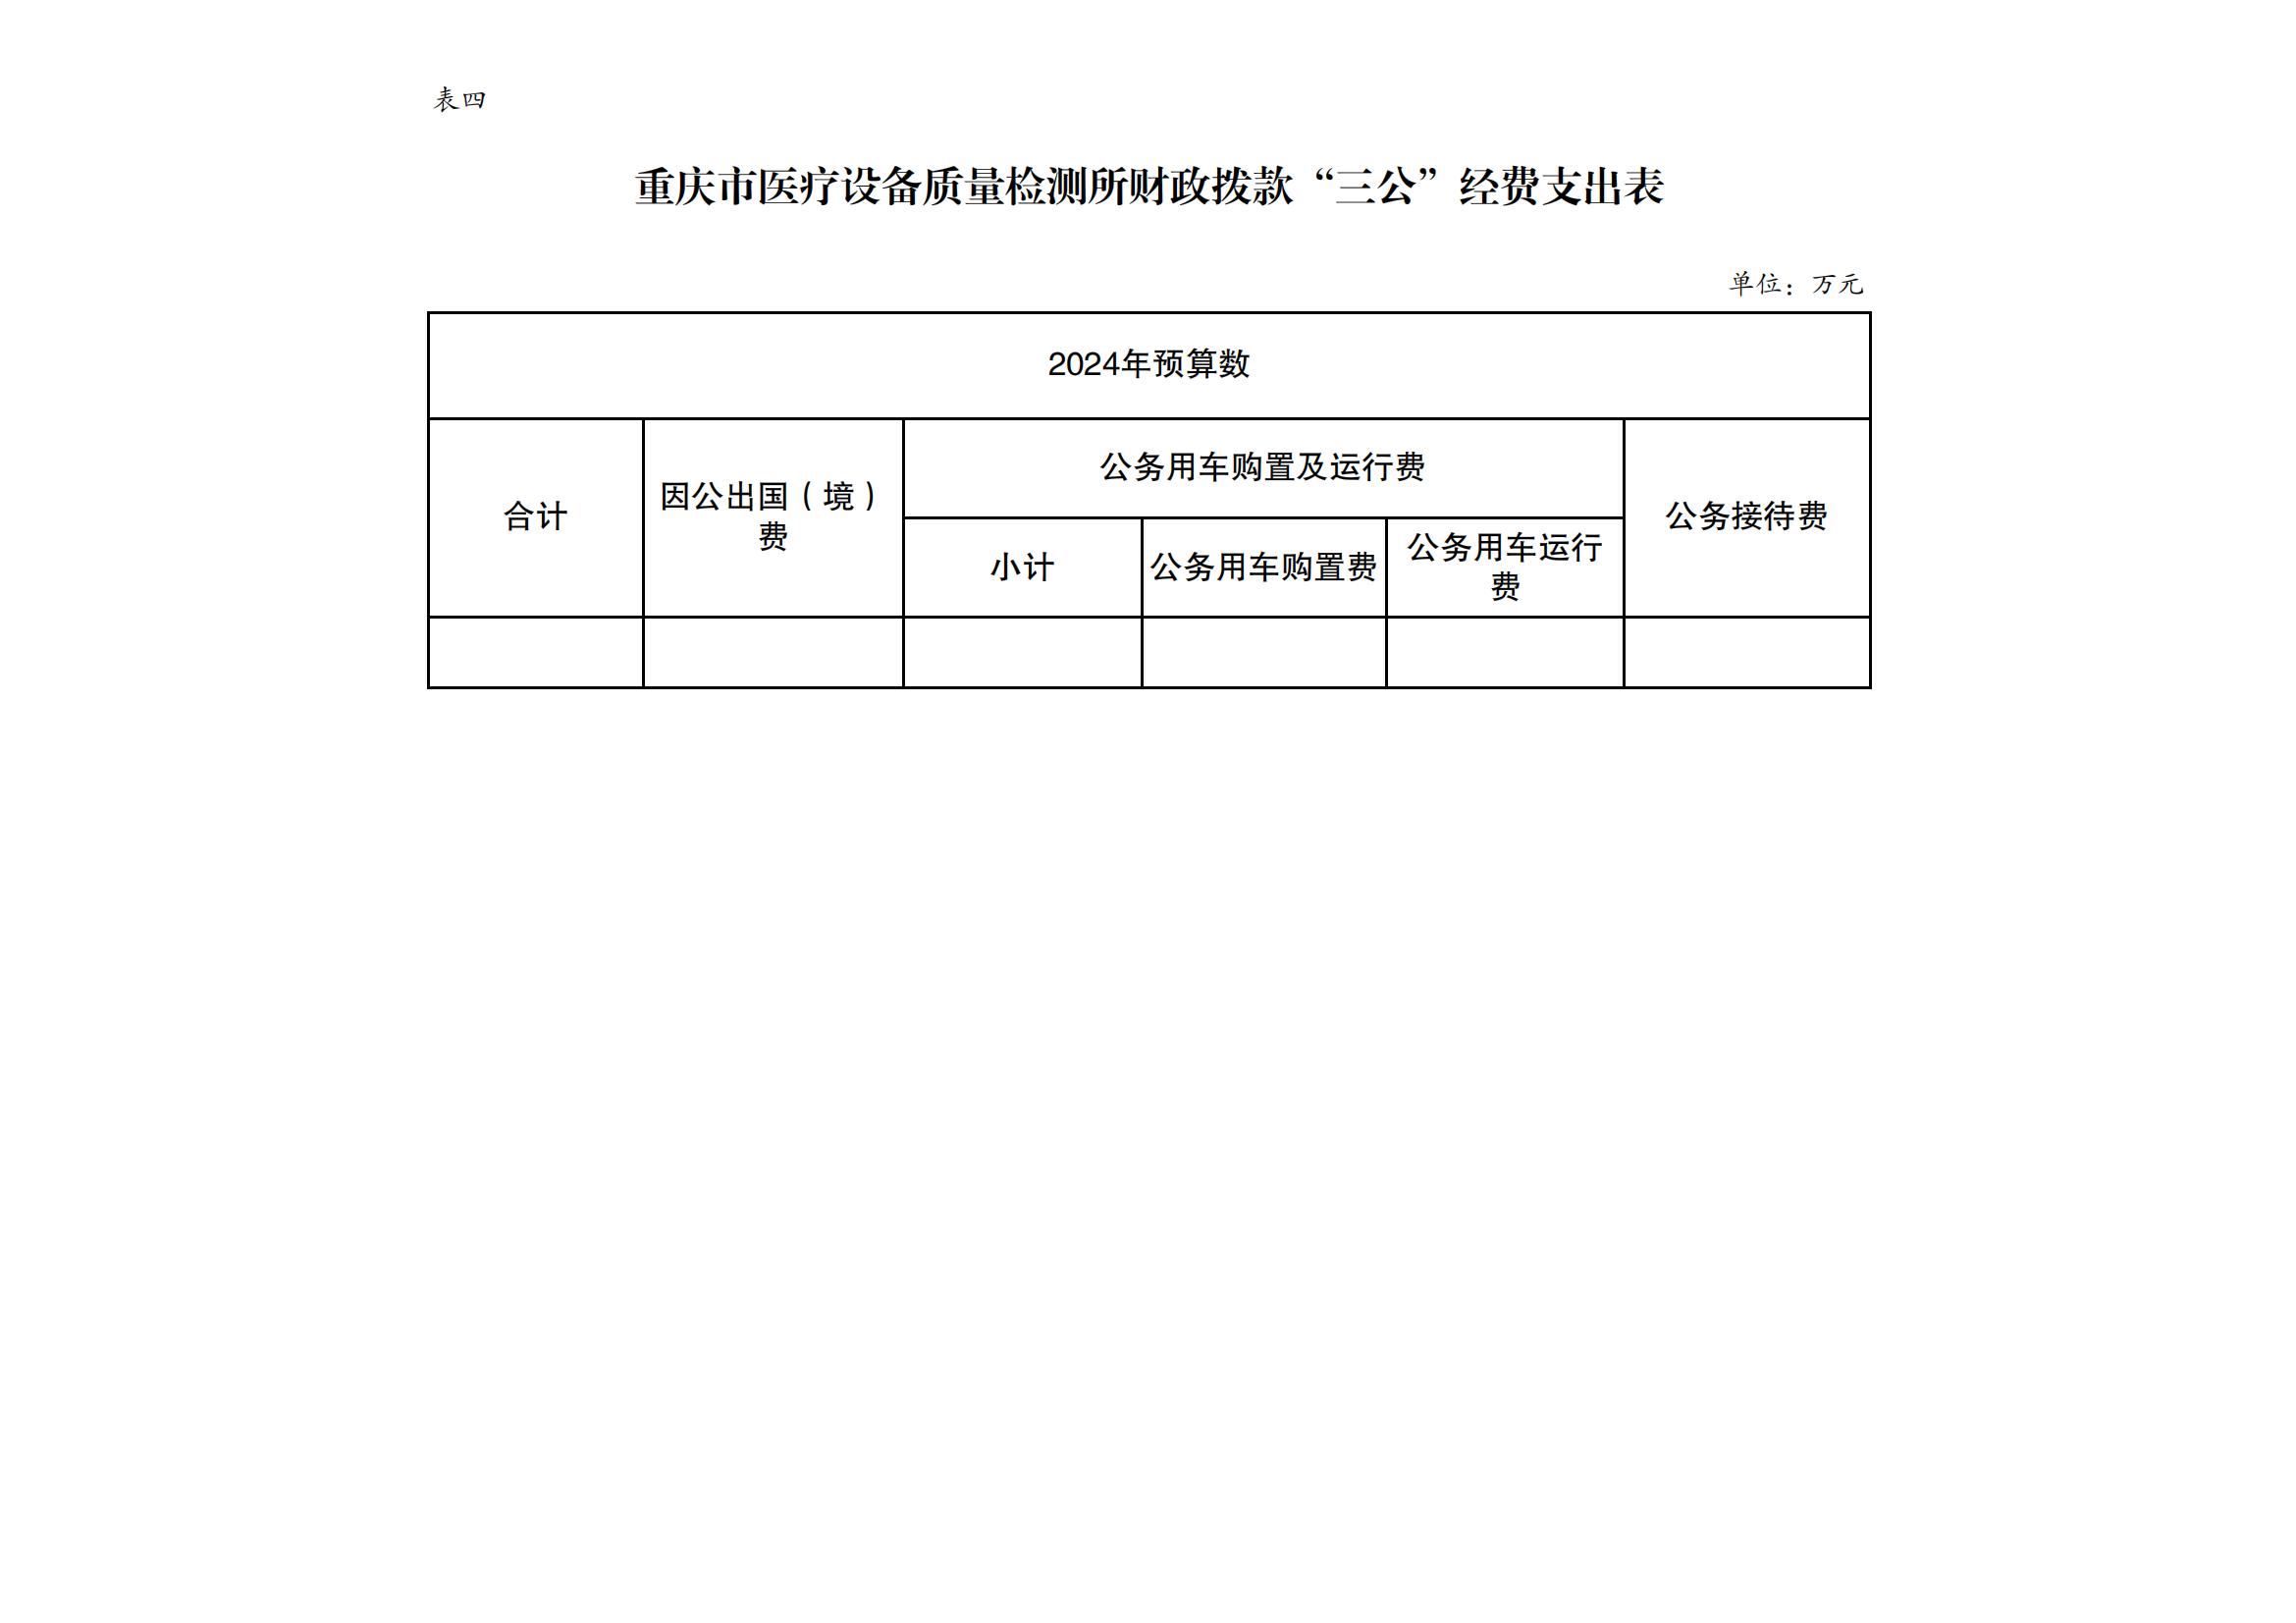 重庆市医疗设备质量检测所2024年单位预算情况说明_07.jpg